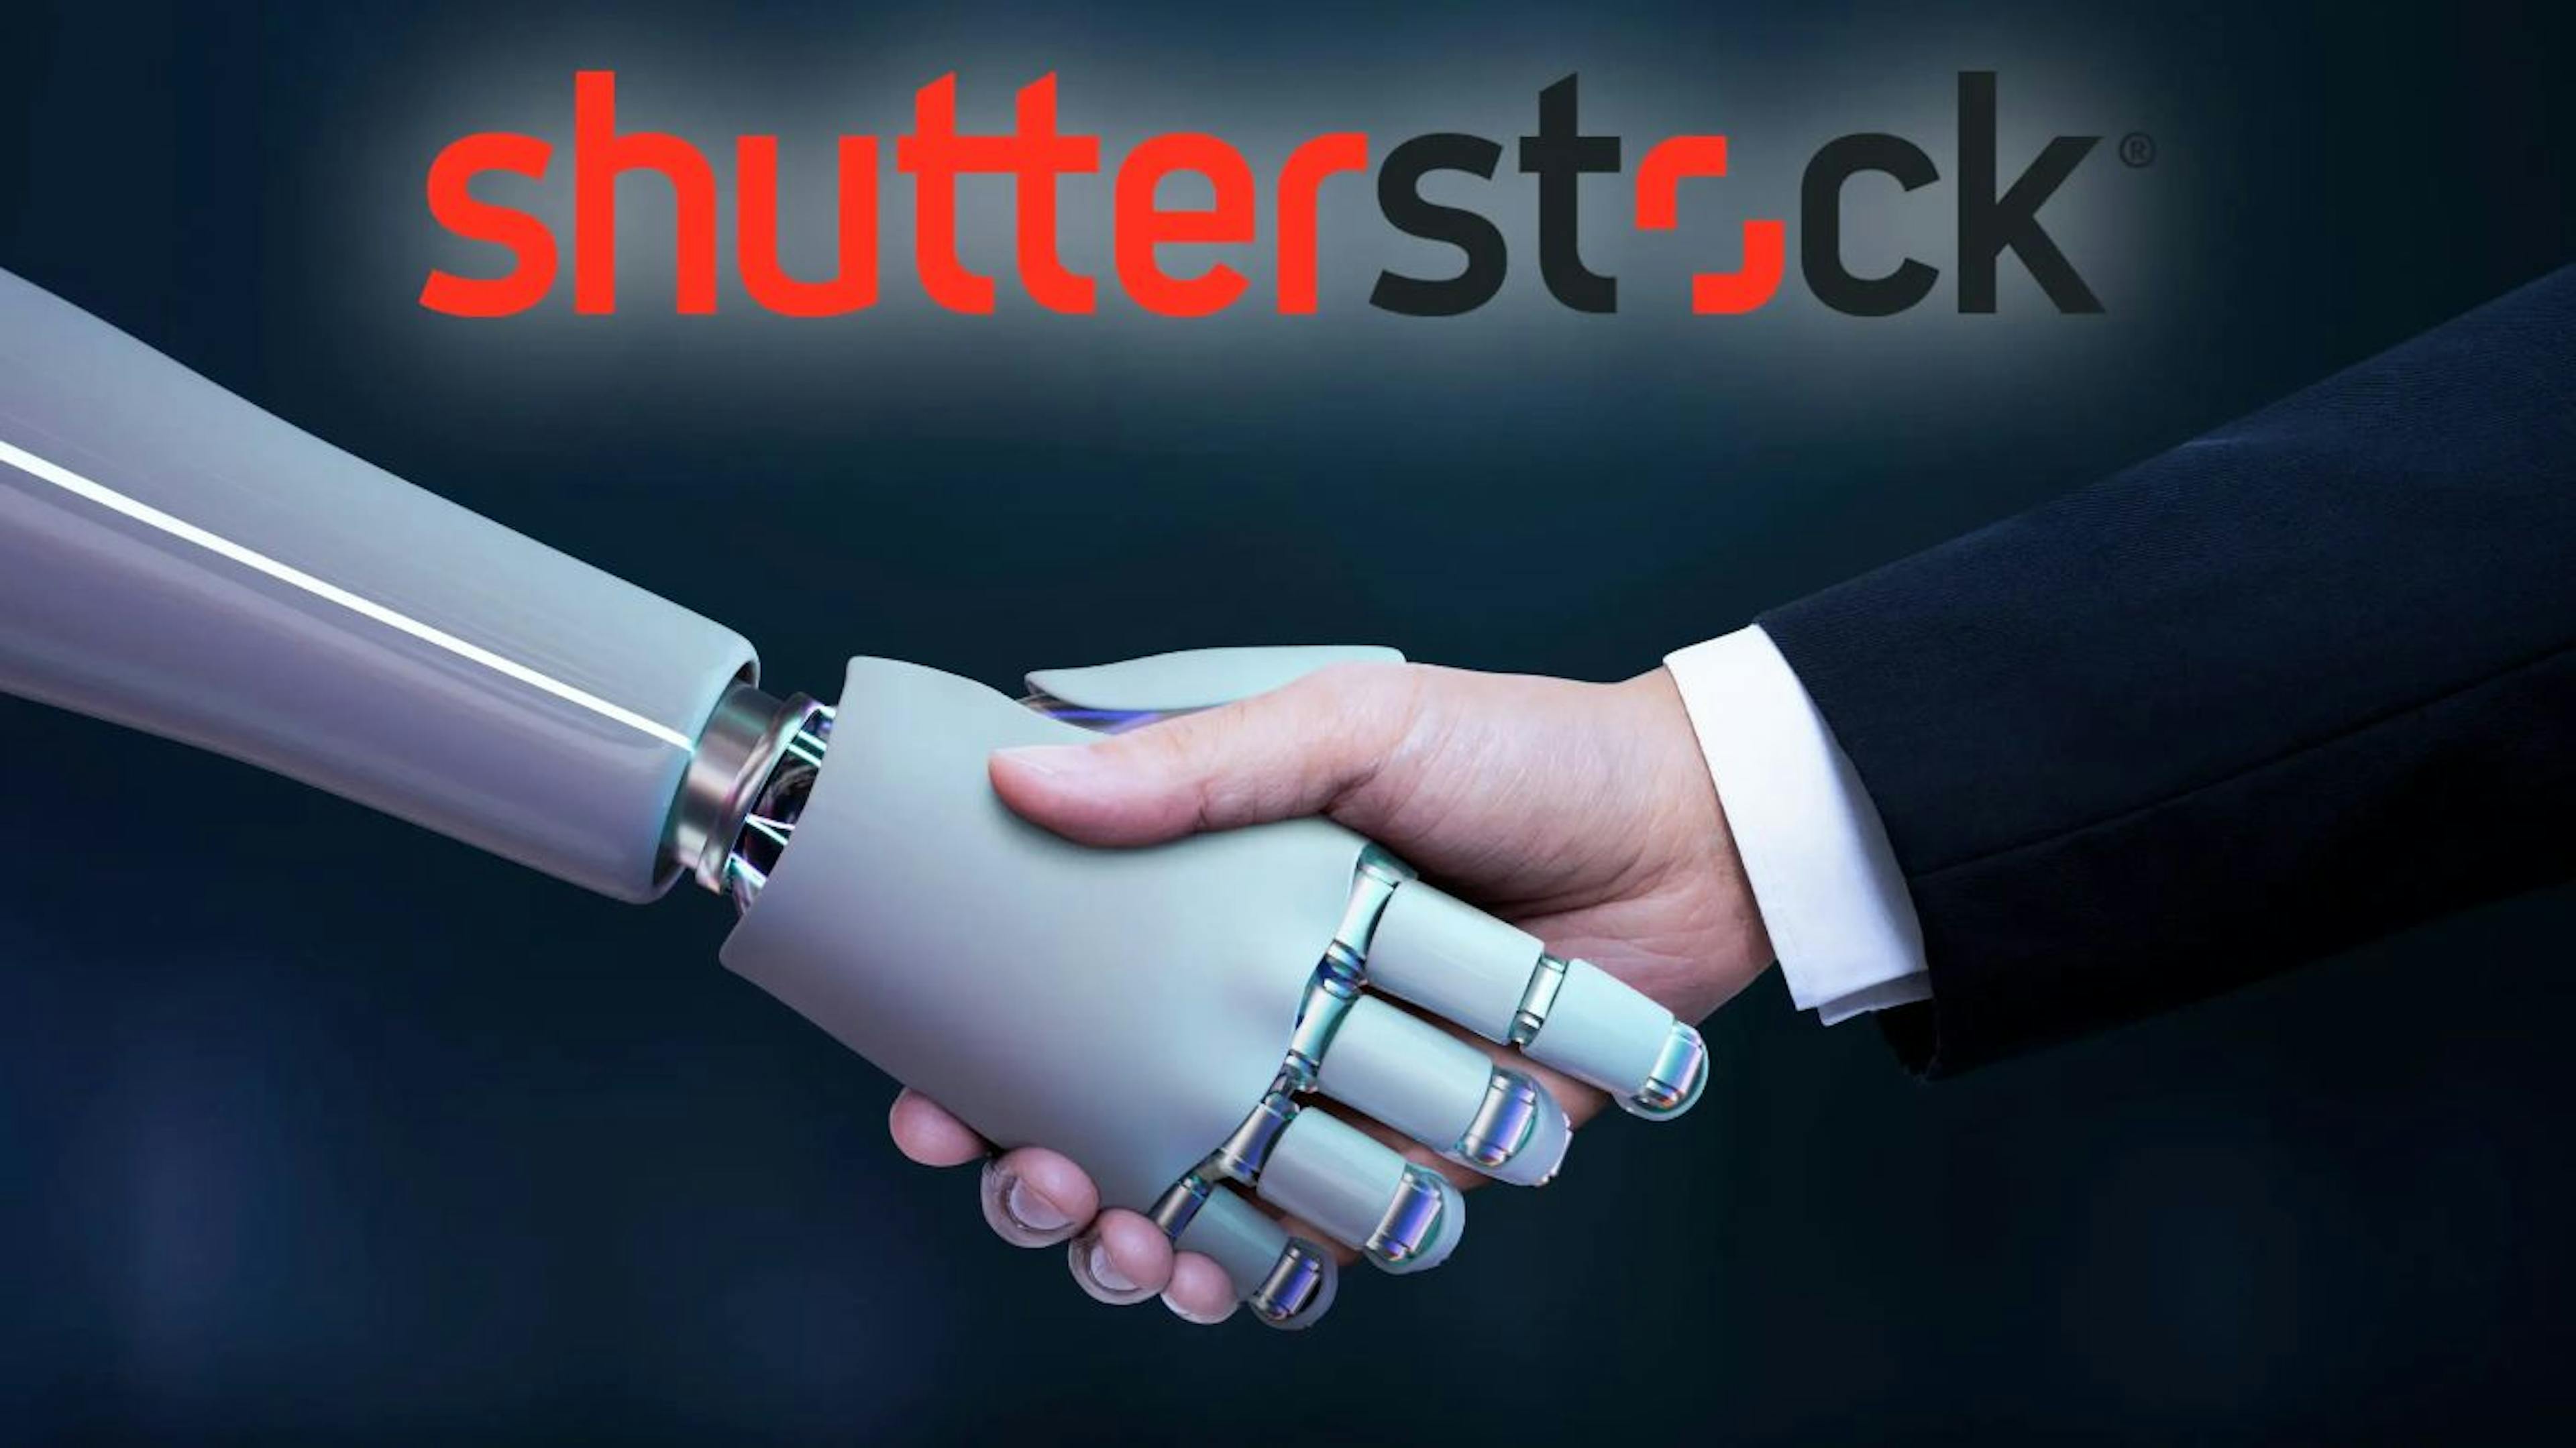 featured image - Shutterstock libera o poder da IA com gerador de imagem de ponta